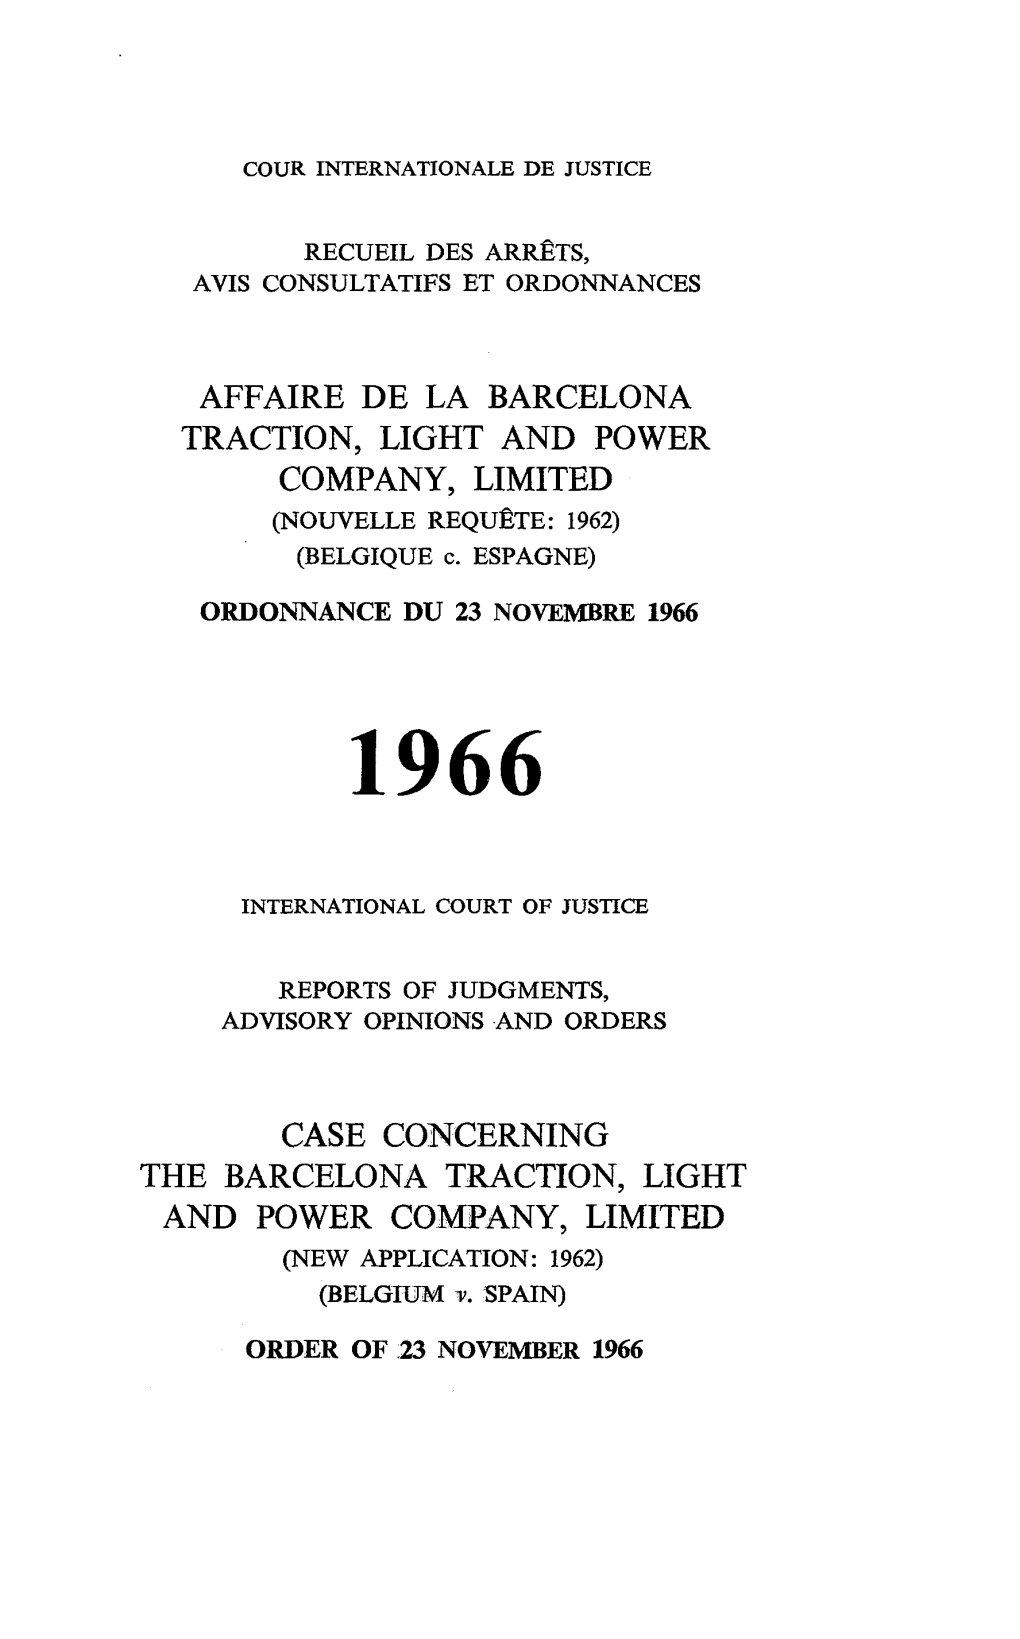 ORDER of 23 NOVEMBER 1966 Mode Officiel De Citation: Barcelona Traction, Light and Power Company, Limited, Ordonnance Du 23 Novembre 1966, C.I.J